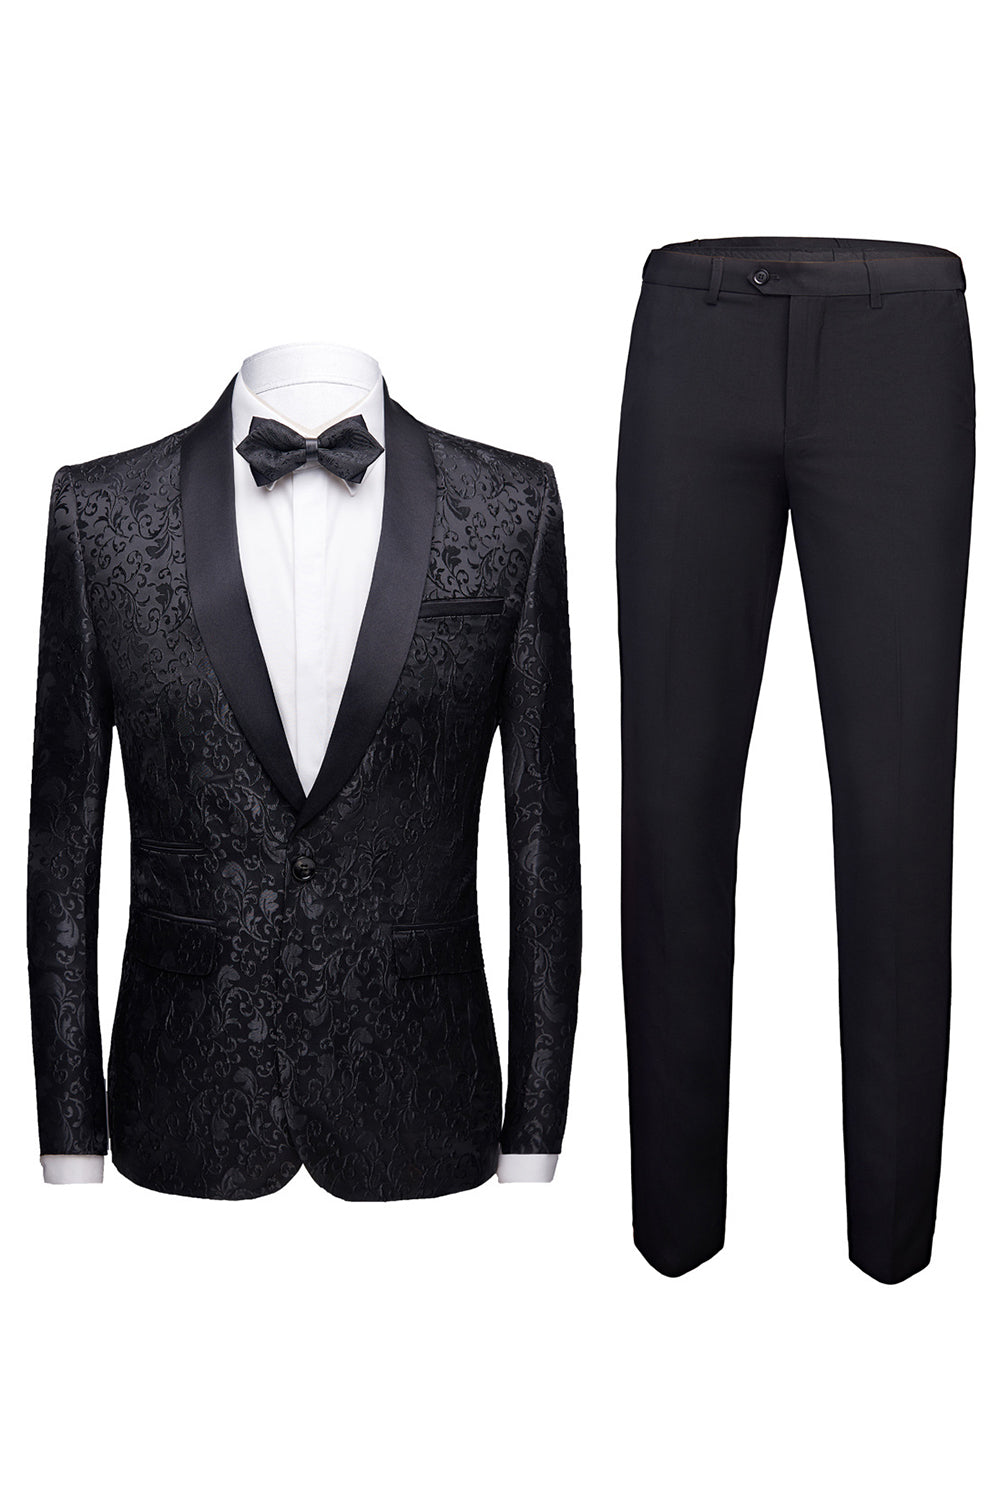 Black 2 Pieces Jacquard Men's Wedding Suits